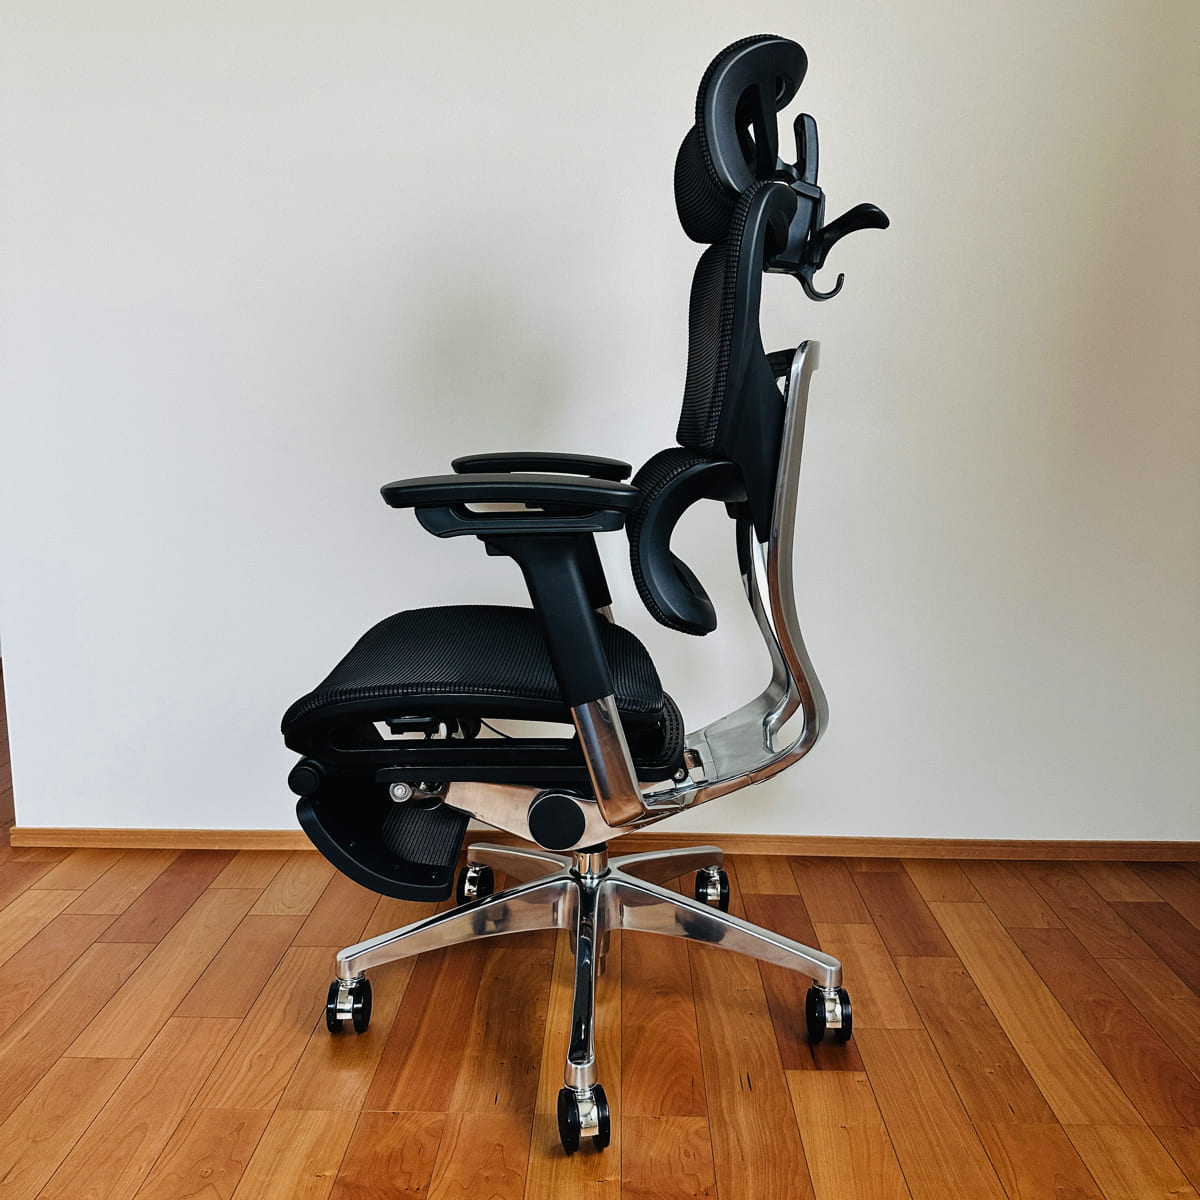 【クーポン付き】COFO Chair Premium口コミレビュー。快適さをカスタマイズ、日本人のための究極ワークチェア。